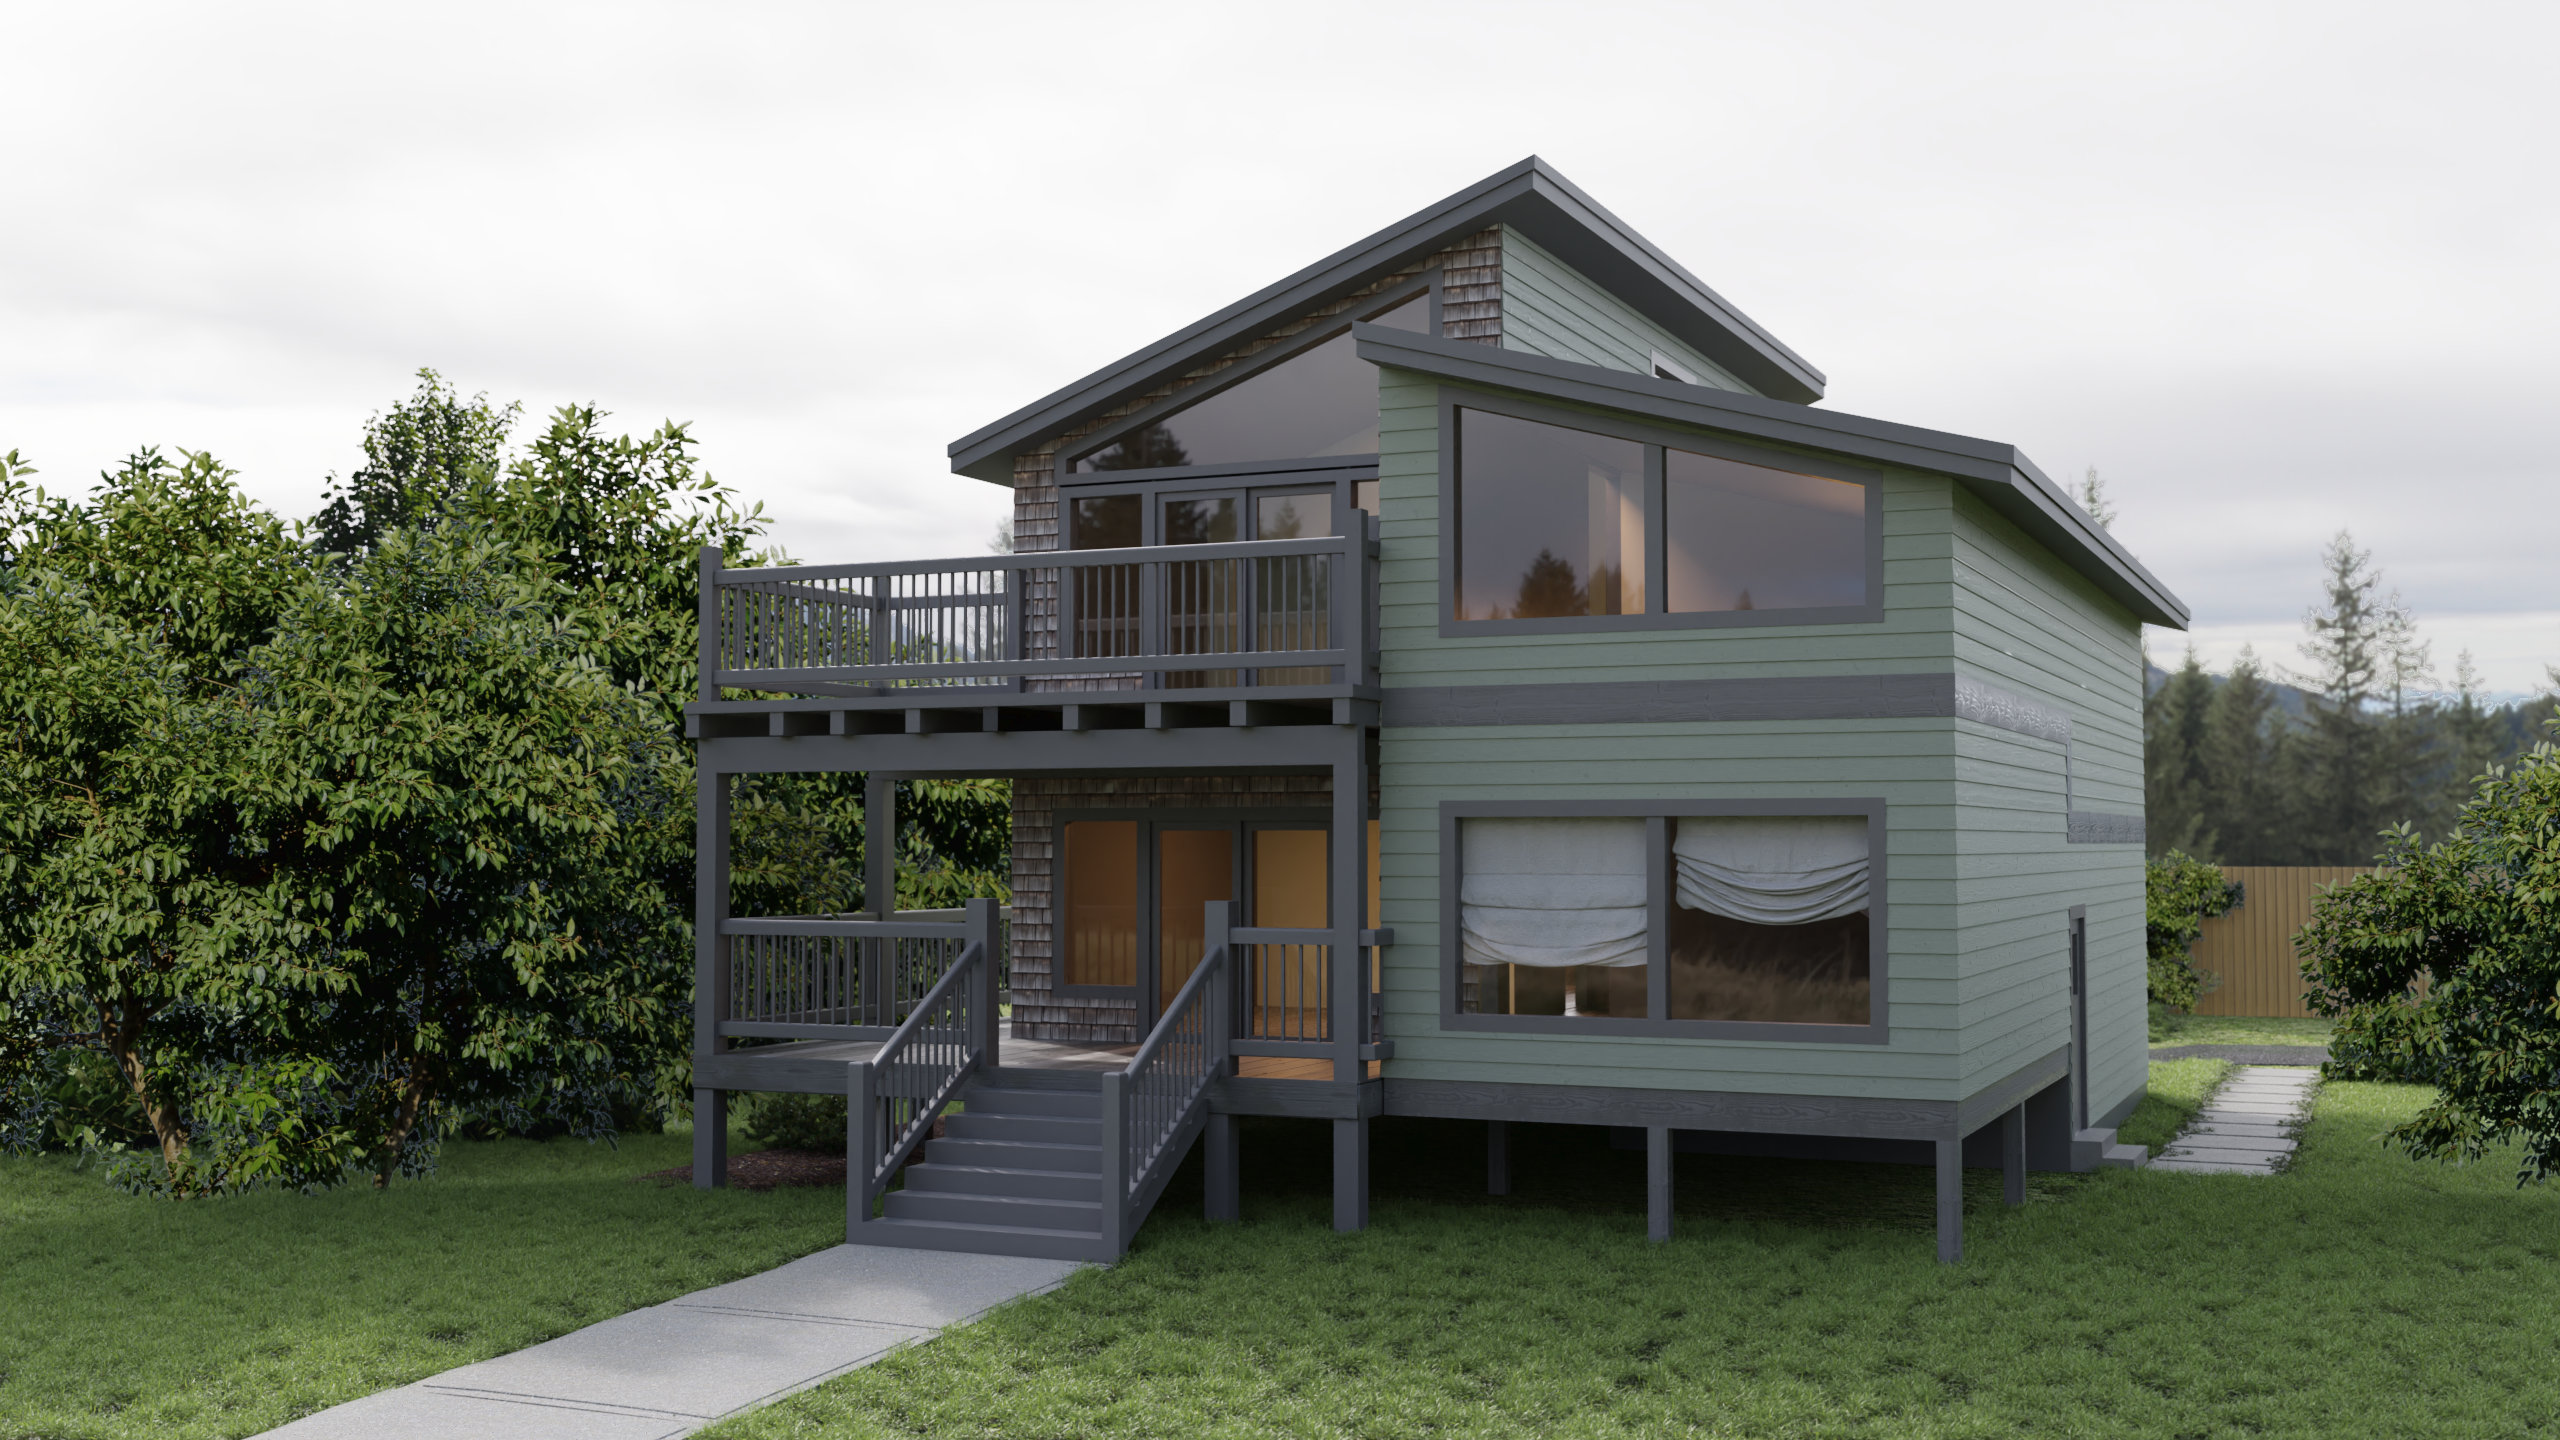 3d model rendering of single family home back